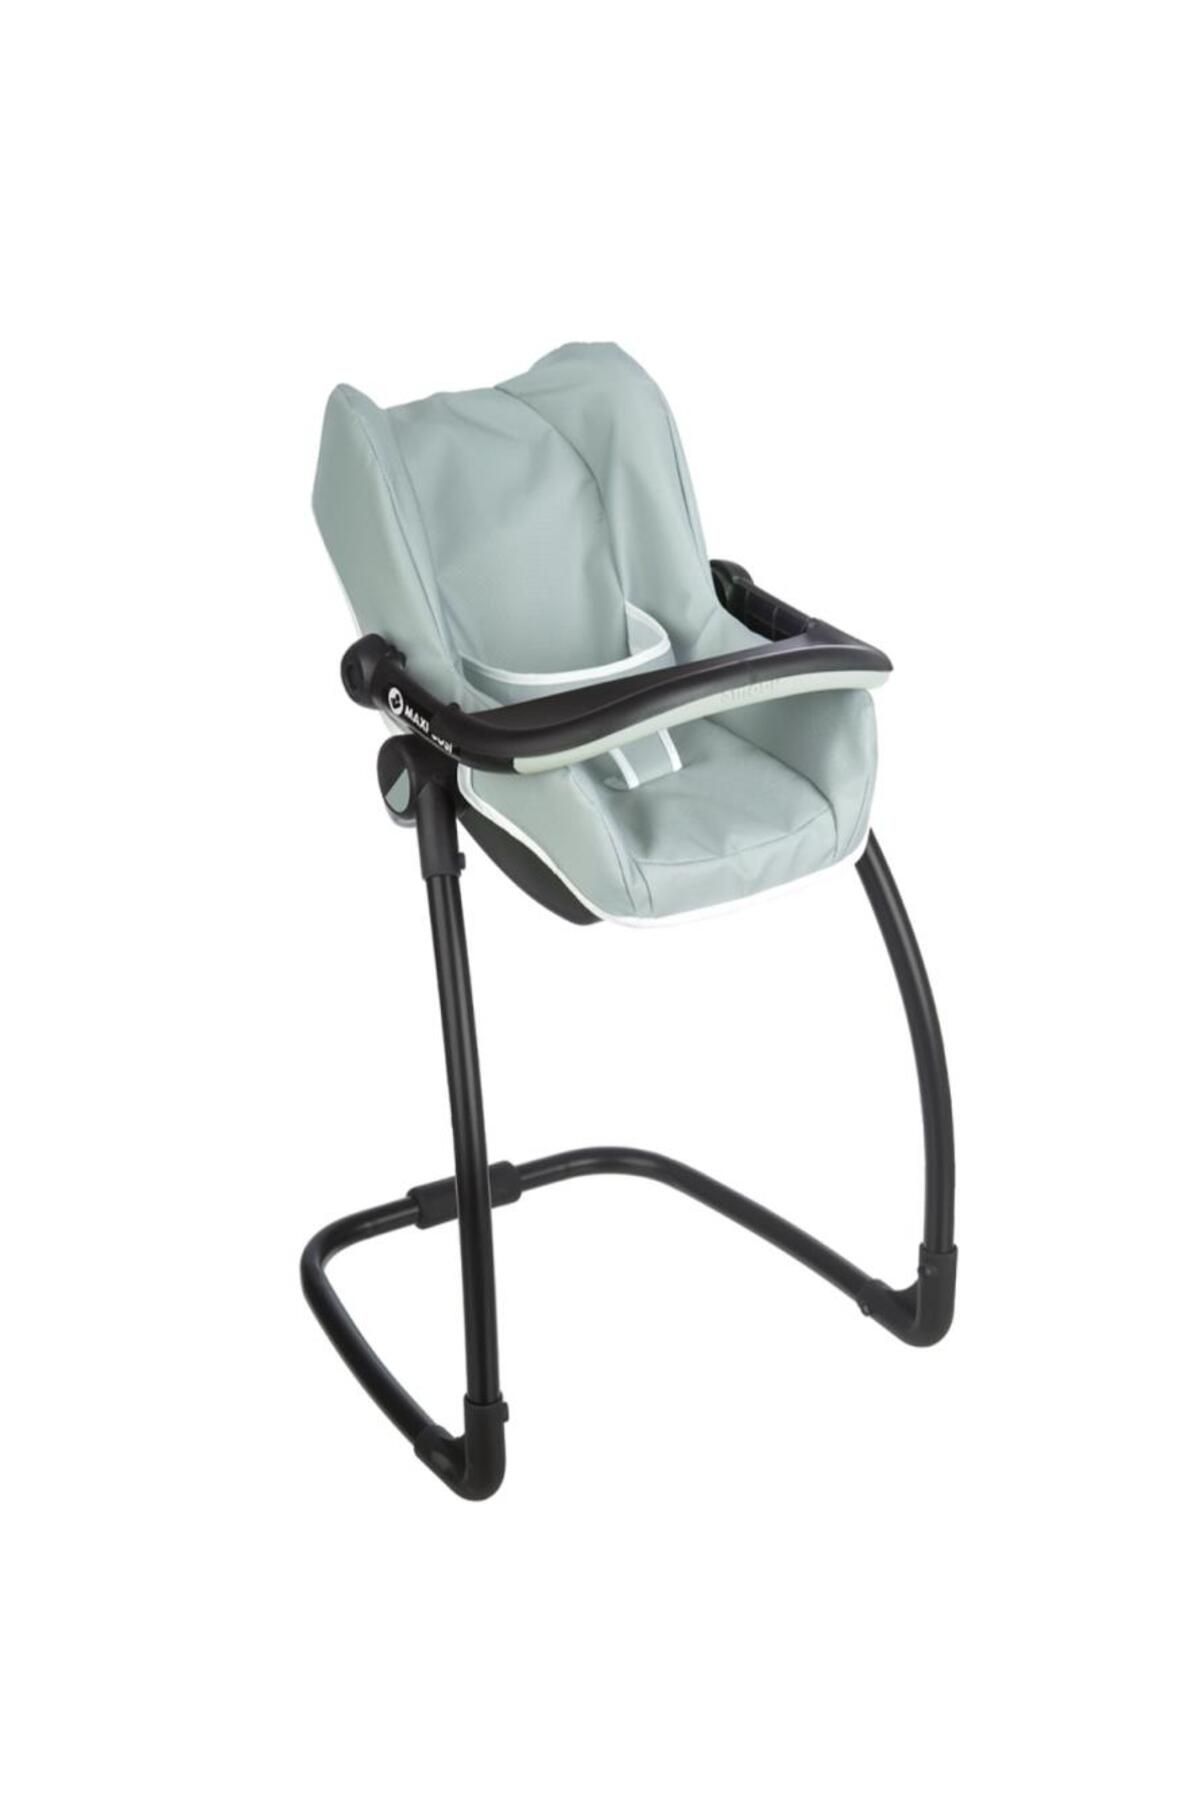 Maxi-Cosi Smoby Maxi-cosi Oyuncak Bebek Mama Sandalyesi Puset Ve Salıncak - Adaçayı Yeşili 240239